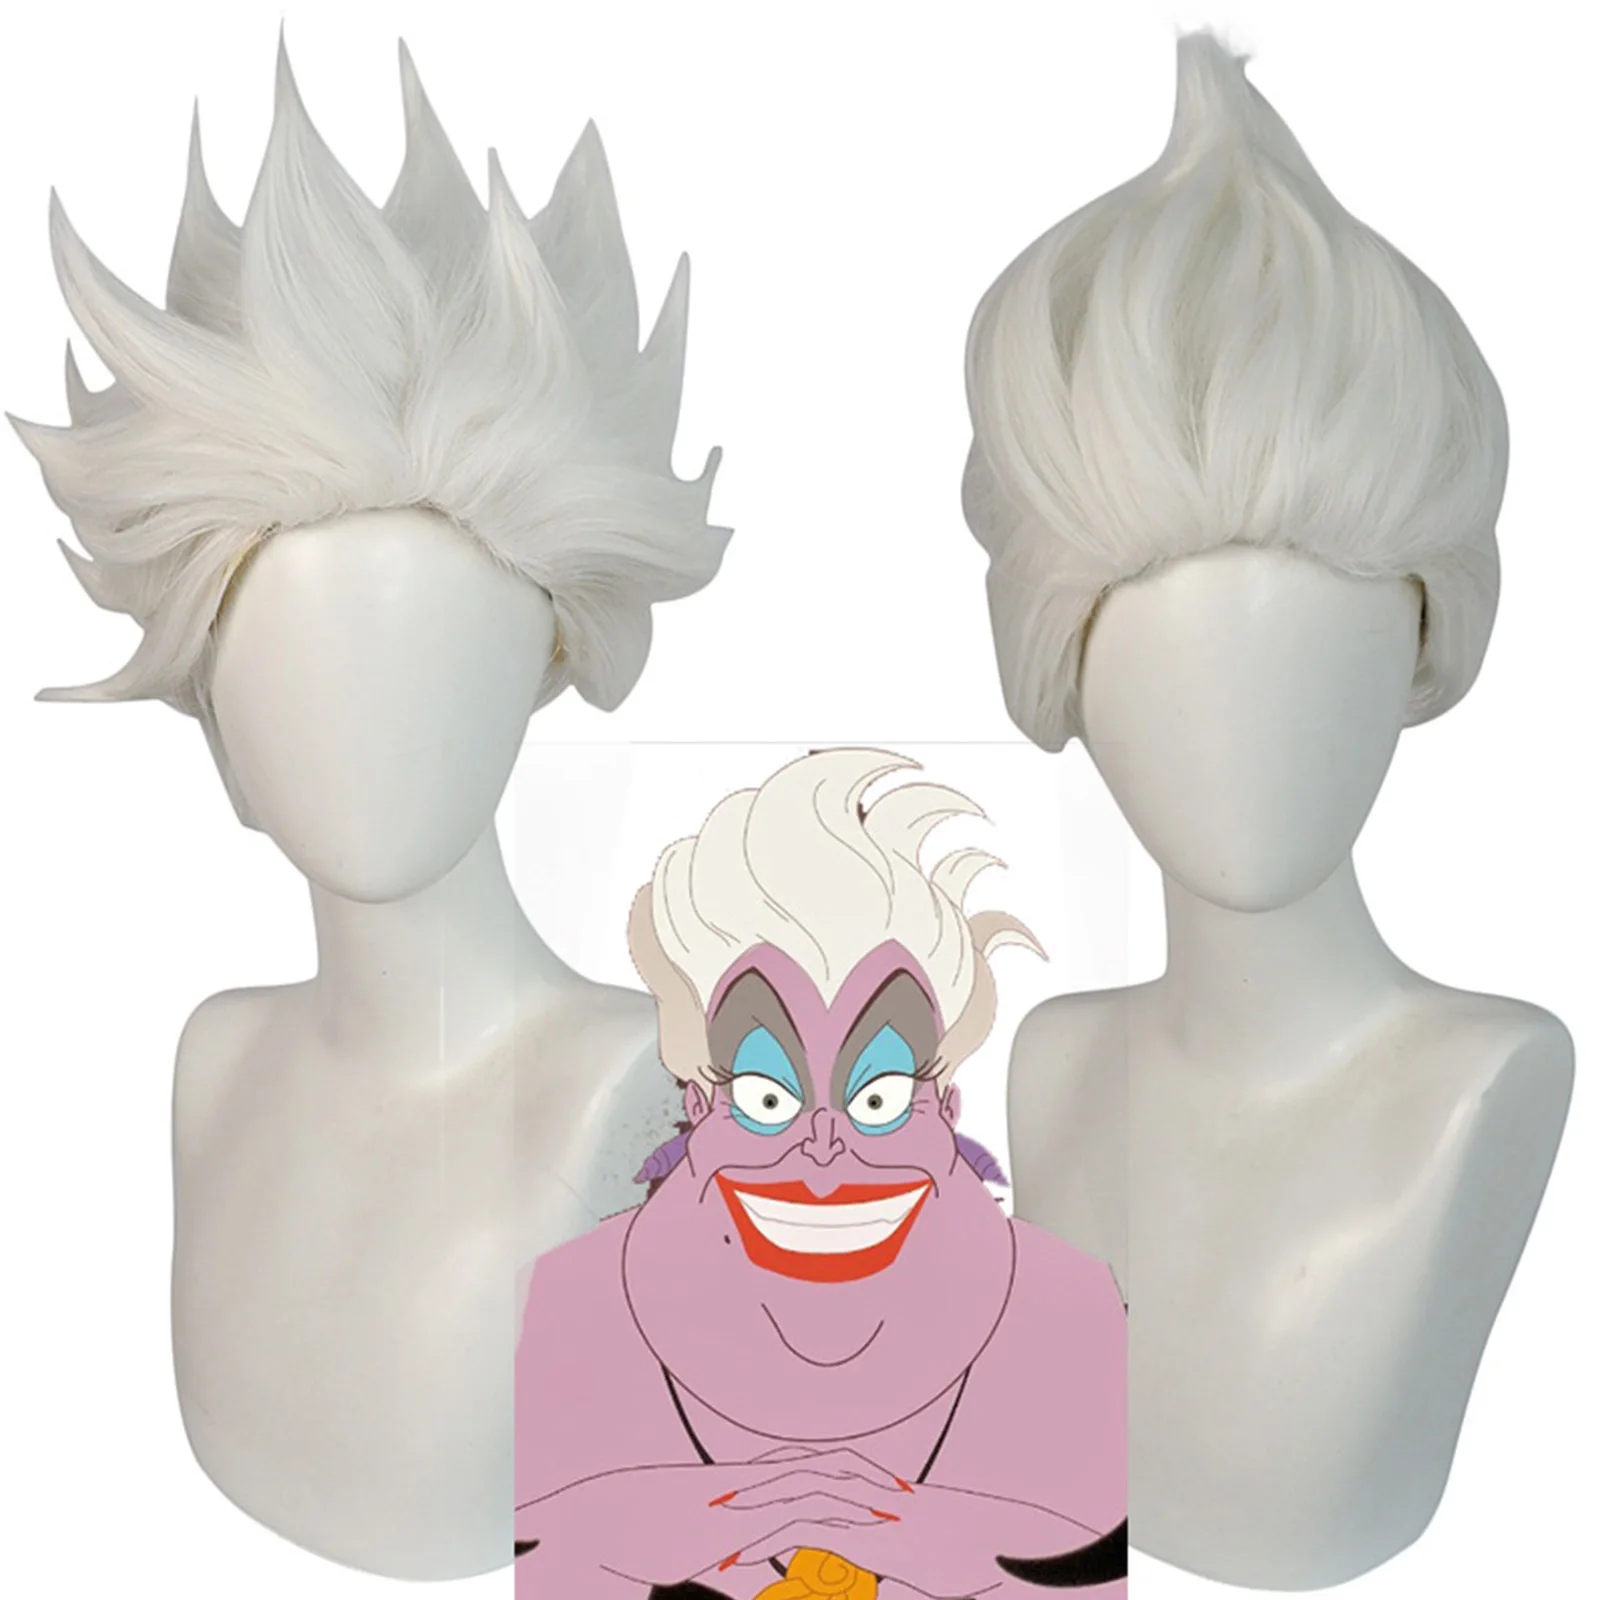 Film Ursula Cosplay Perücke weiß kurzes Haar für erwachsene Frauen Männer Halloween Kostüm Requisiten Cosplay Rollenspiel Perücken